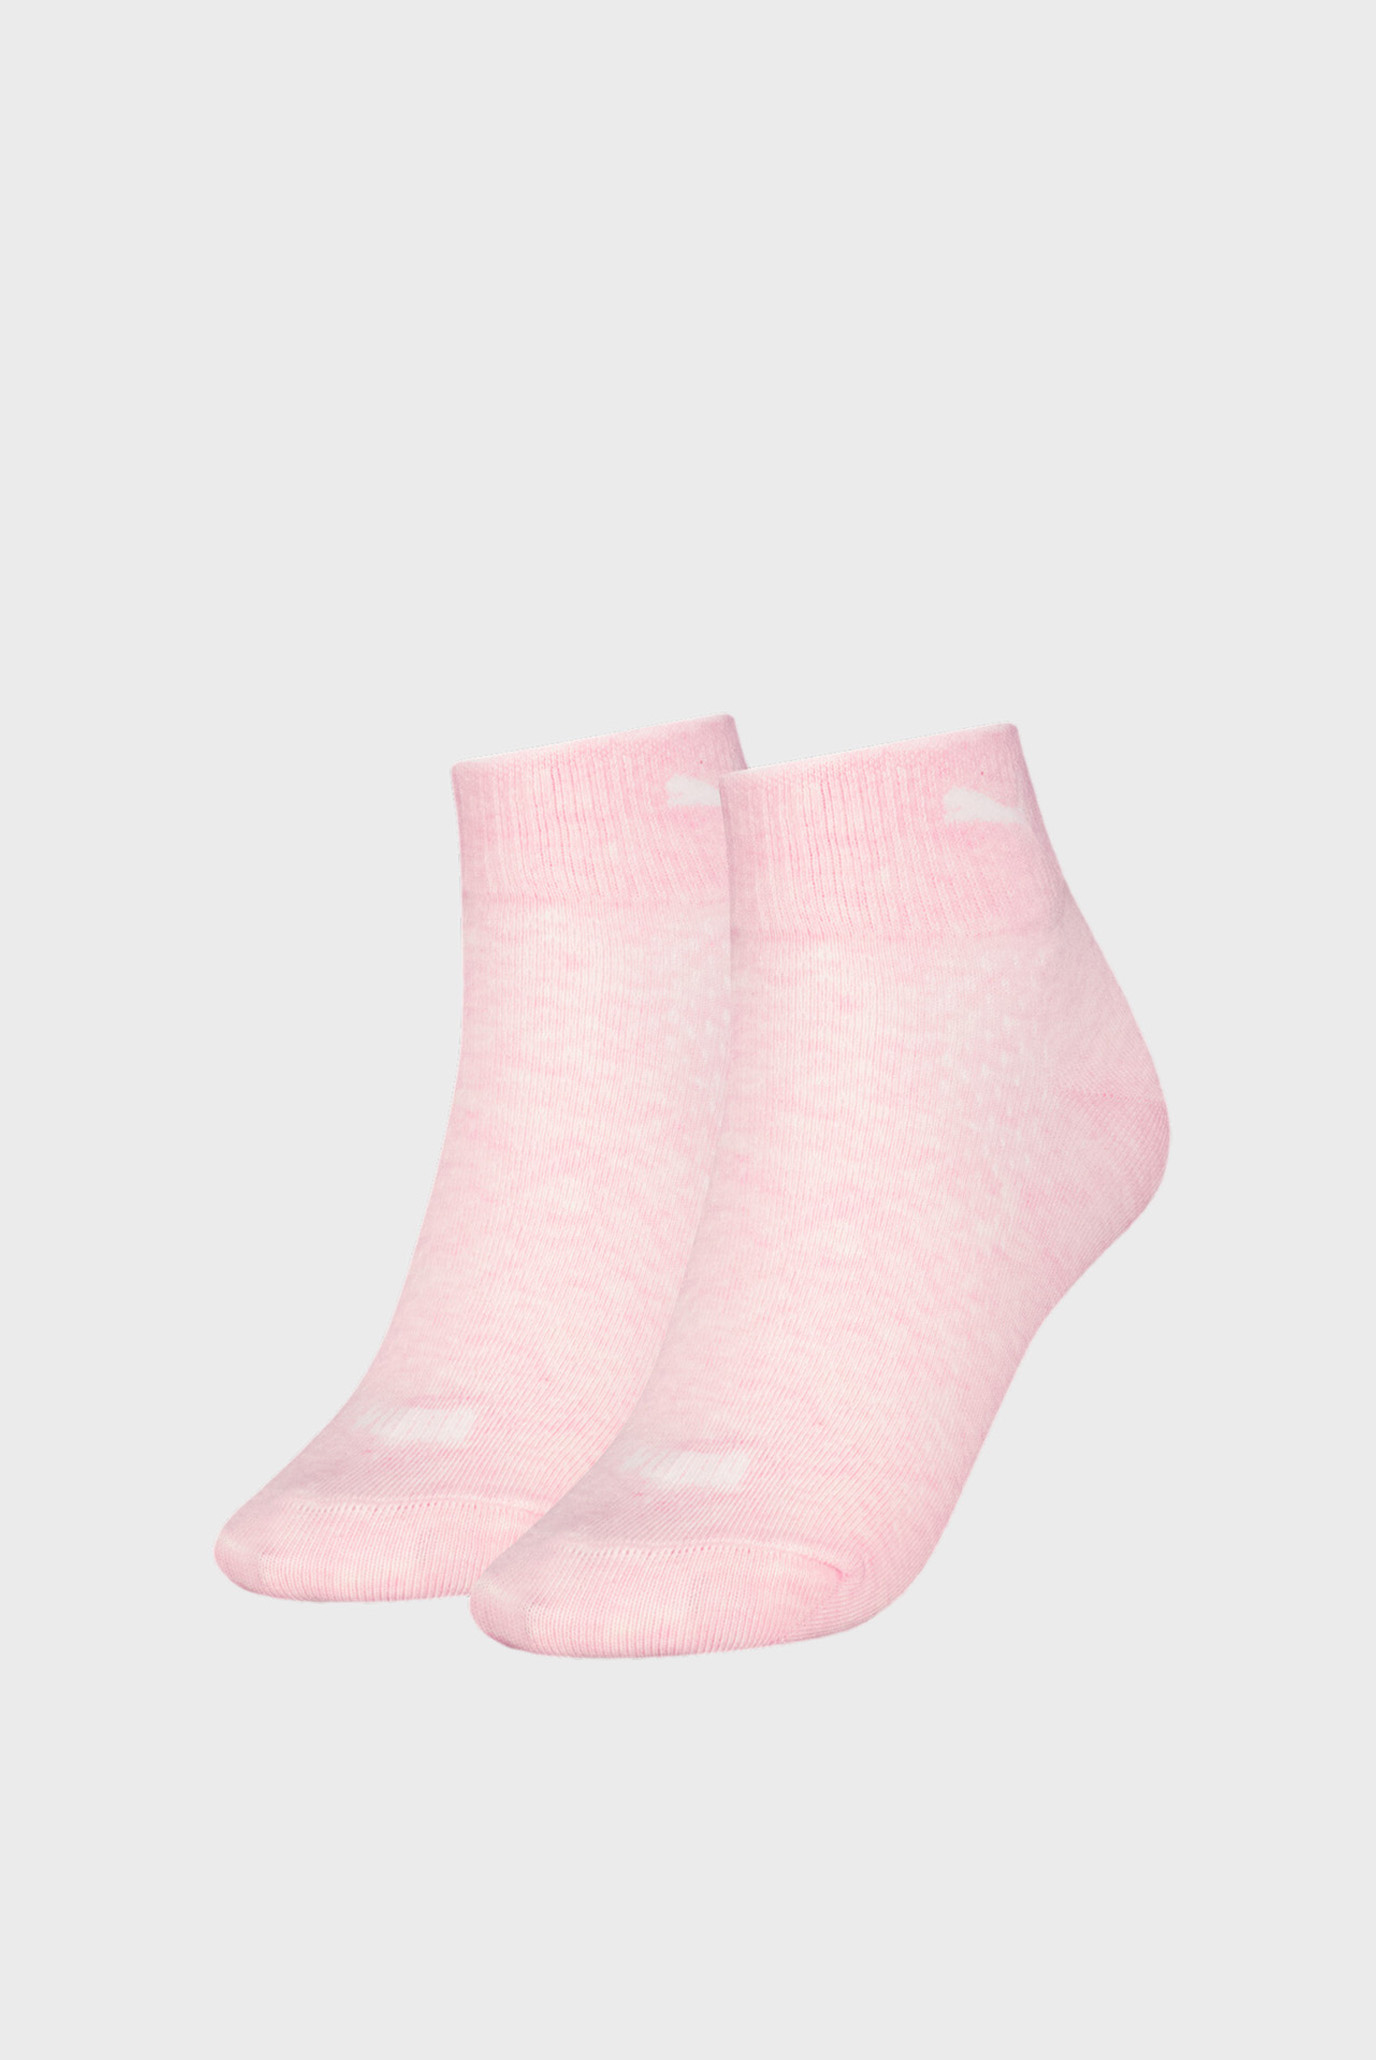 Женские розовые носки (2 пары) PUMA Women's Quarter Socks 2 pack 1